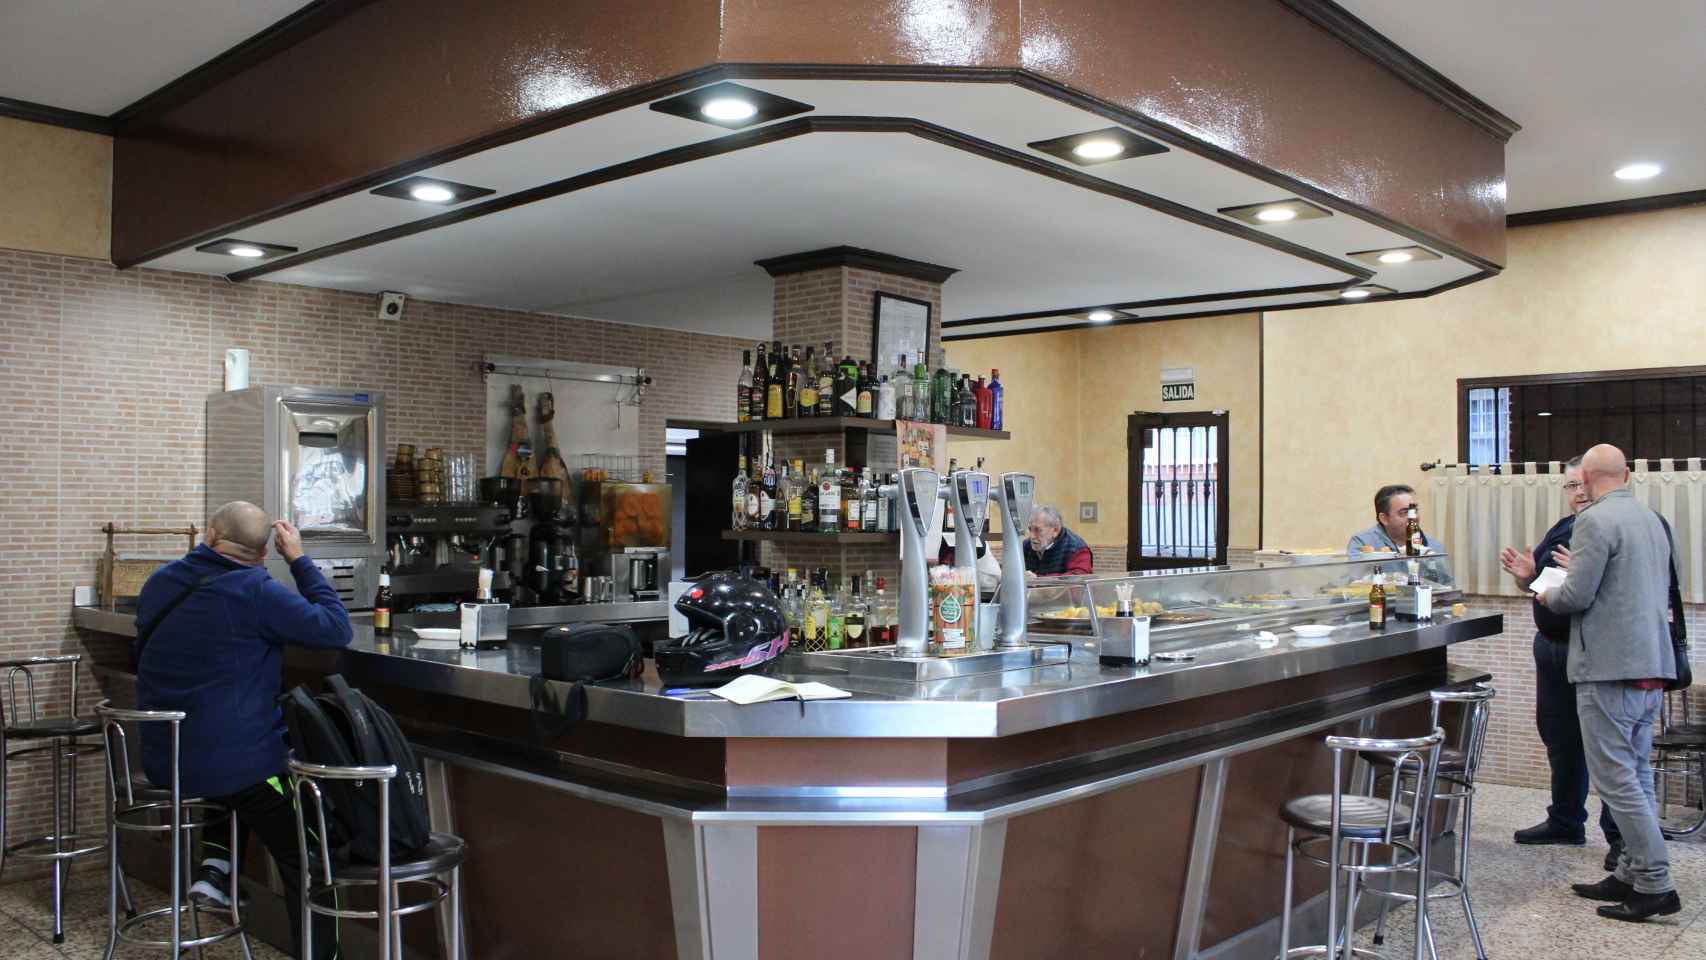 El interior del bar La montaña, este jueves.